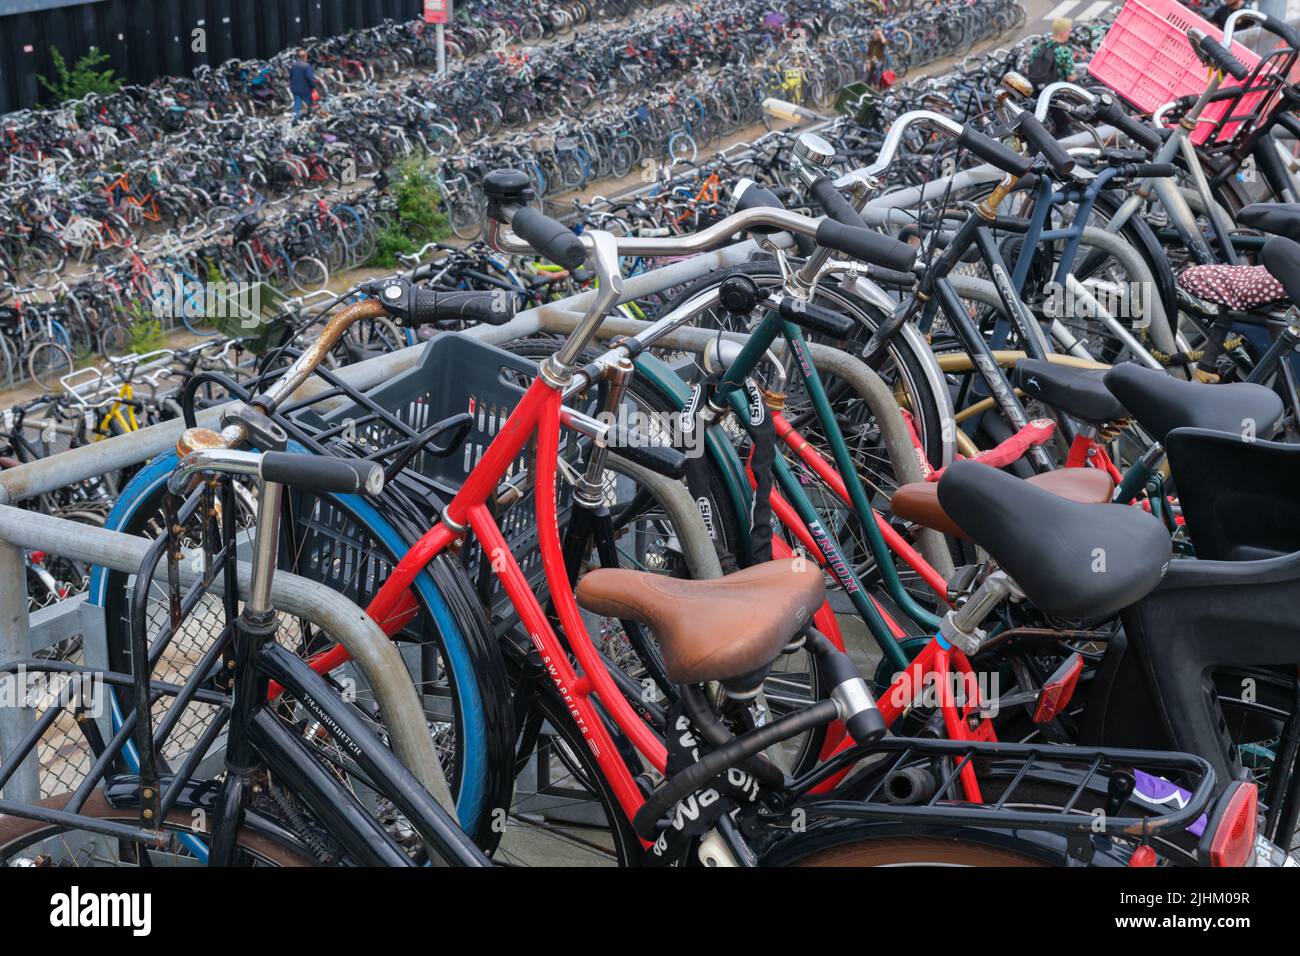 Aparcamiento De Bicicletas En El Centro De Ámsterdam. Fotos, retratos,  imágenes y fotografía de archivo libres de derecho. Image 55032277